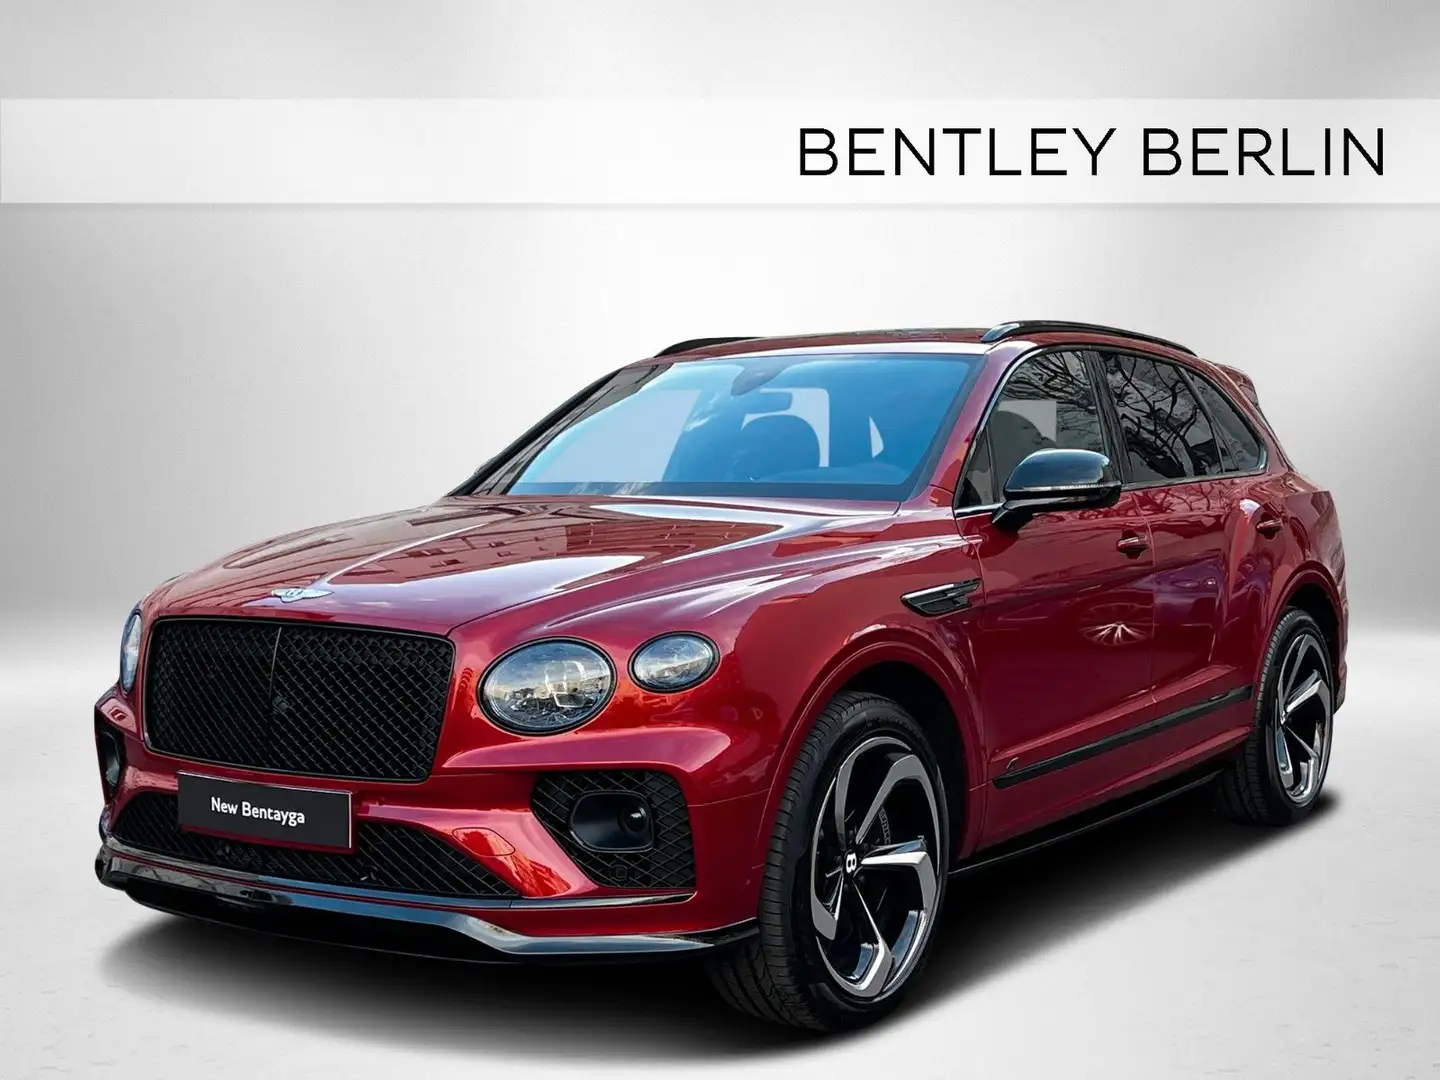 Bentley Bentayga S V8  - STONE VENEER - BENTLEY BERLIN - Red - 1